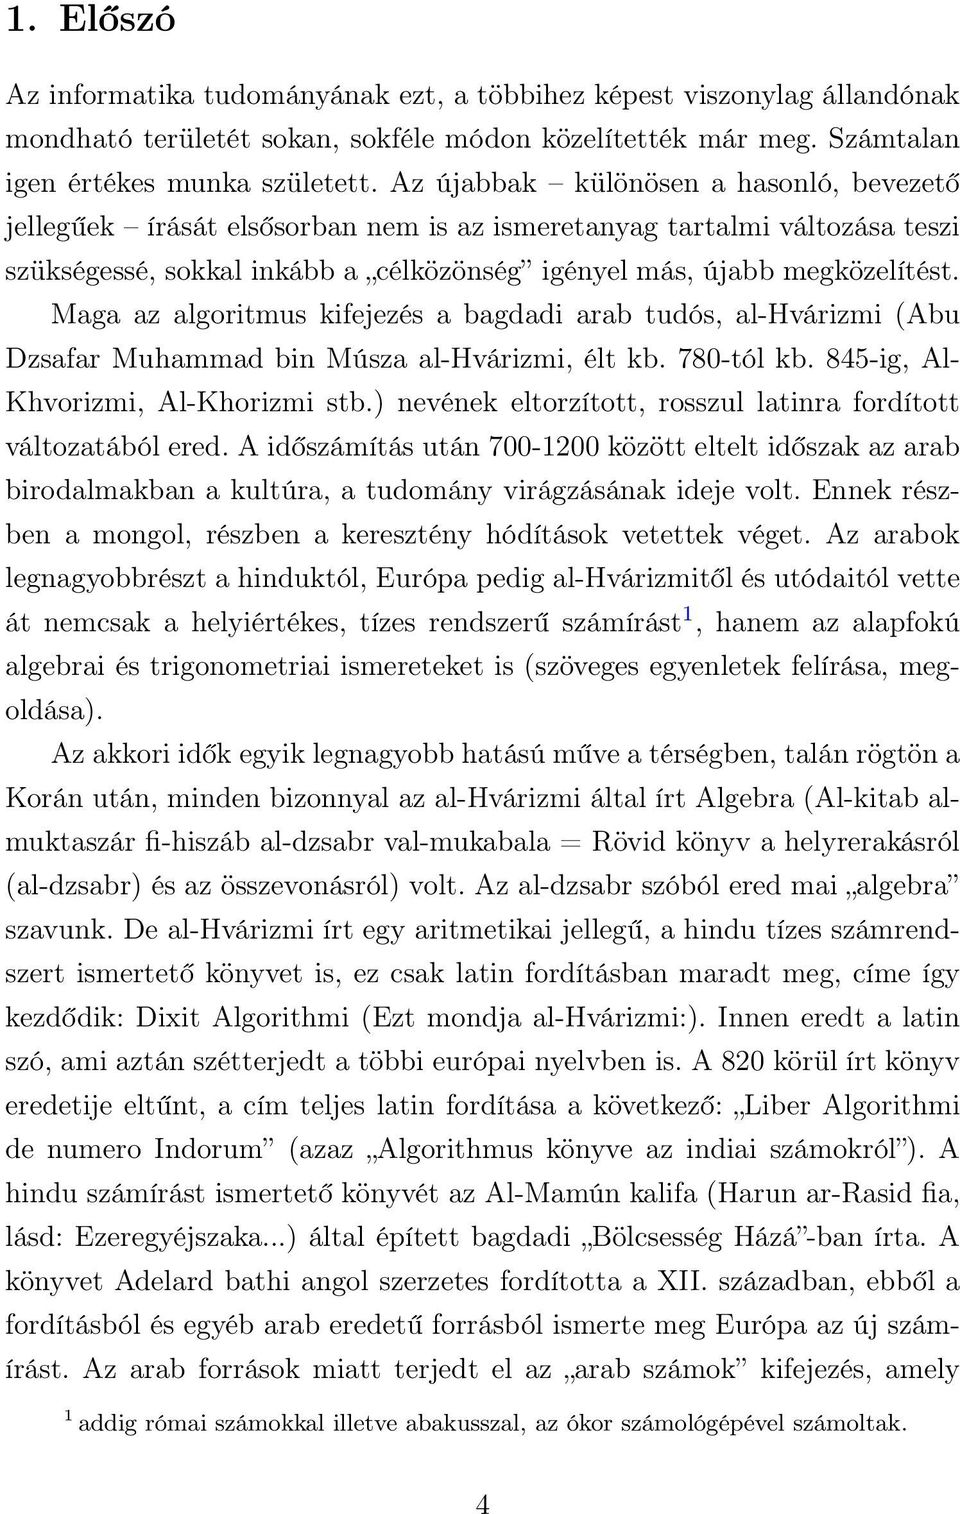 Maga az algoritmus kifejezés a bagdadi arab tudós, al-hvárizmi (Abu Dzsafar Muhammad bin Músza al-hvárizmi, élt kb. 780-tól kb. 845-ig, Al- Khvorizmi, Al-Khorizmi stb.